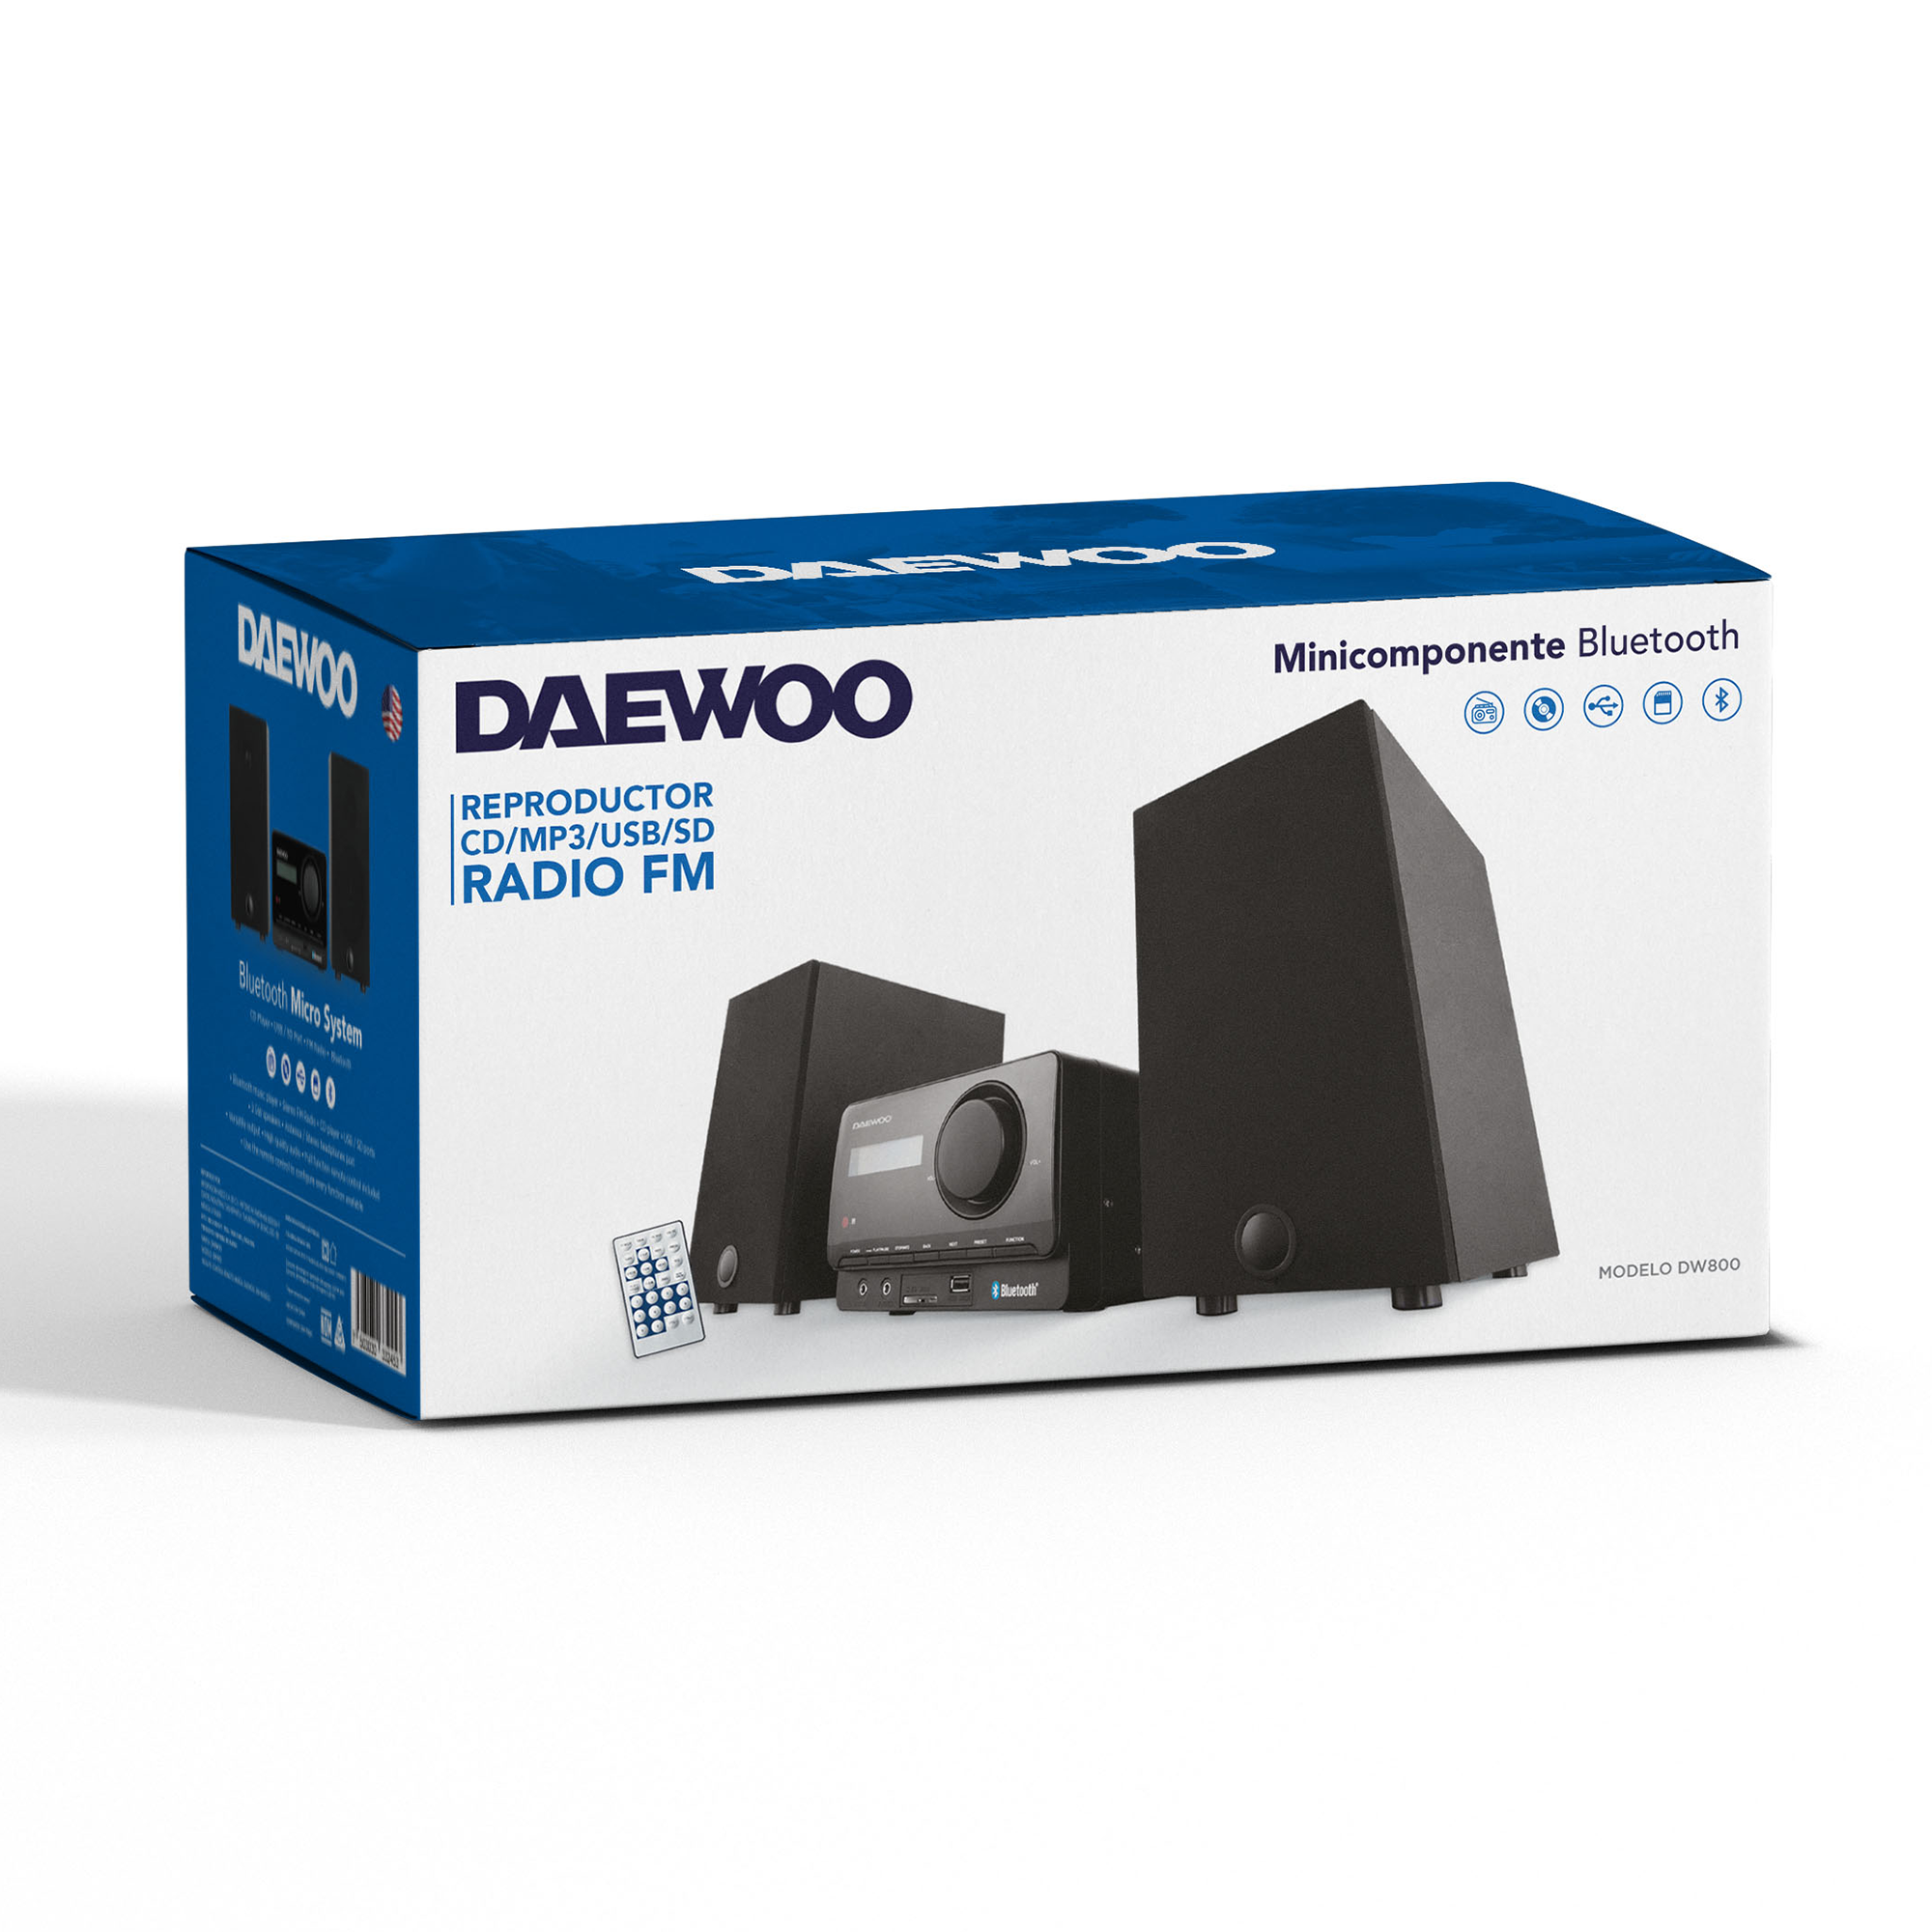 Minicomponente Daewoo DW-800 Bluetooth Fm Usb Cd Sd